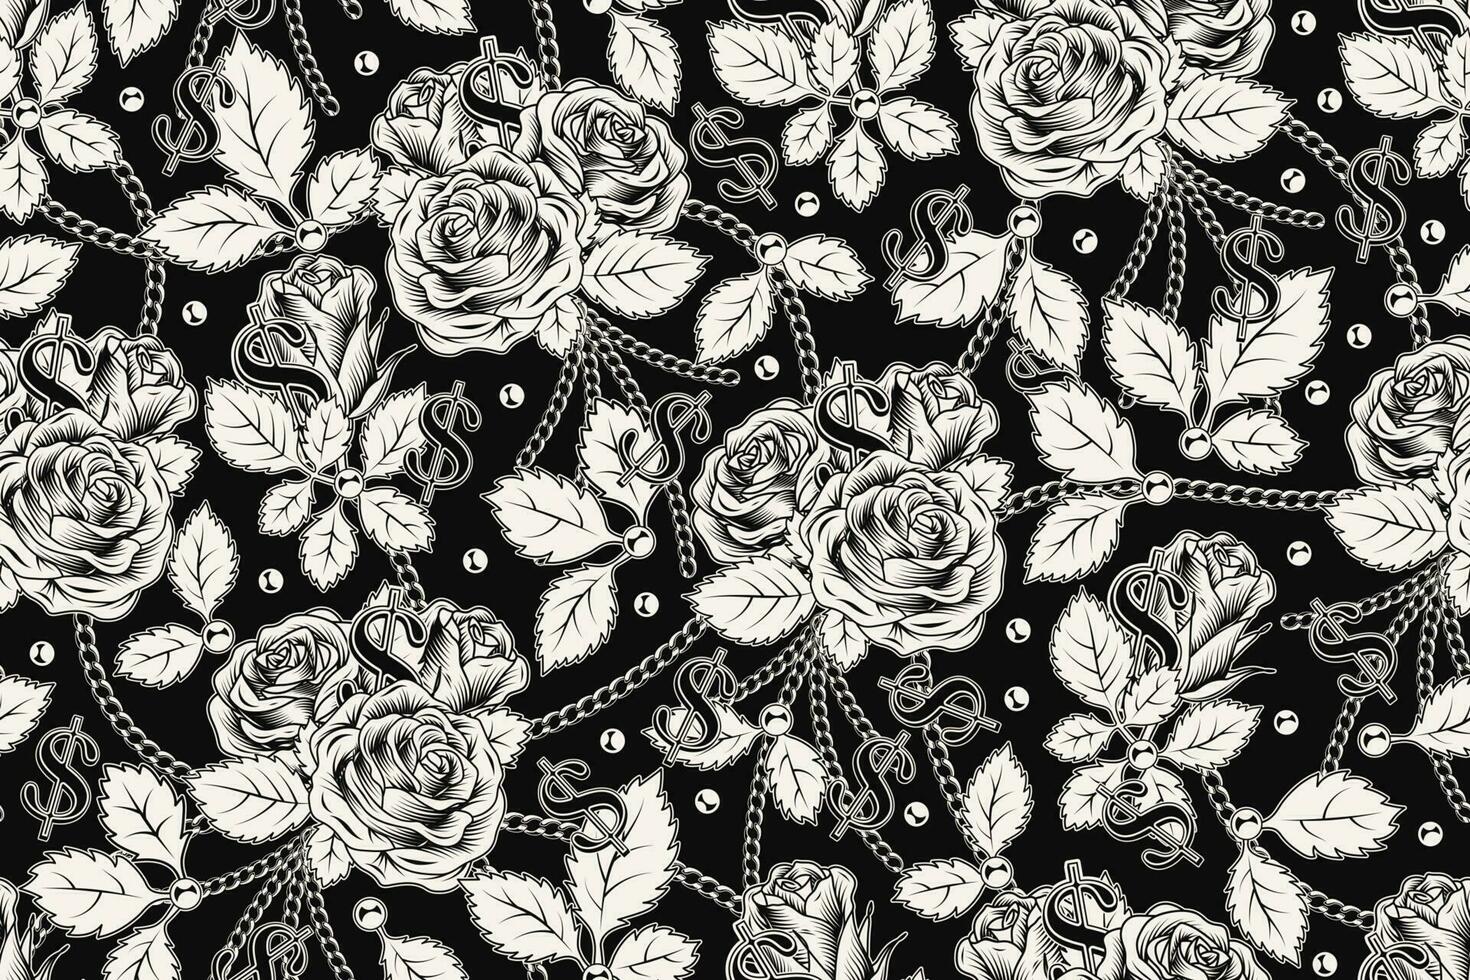 sömlös mönster med frodig blomning årgång ro med löv, metall boll kedjor, dollar tecken. svartvit vektor illustration vit på svart. gravyr stil